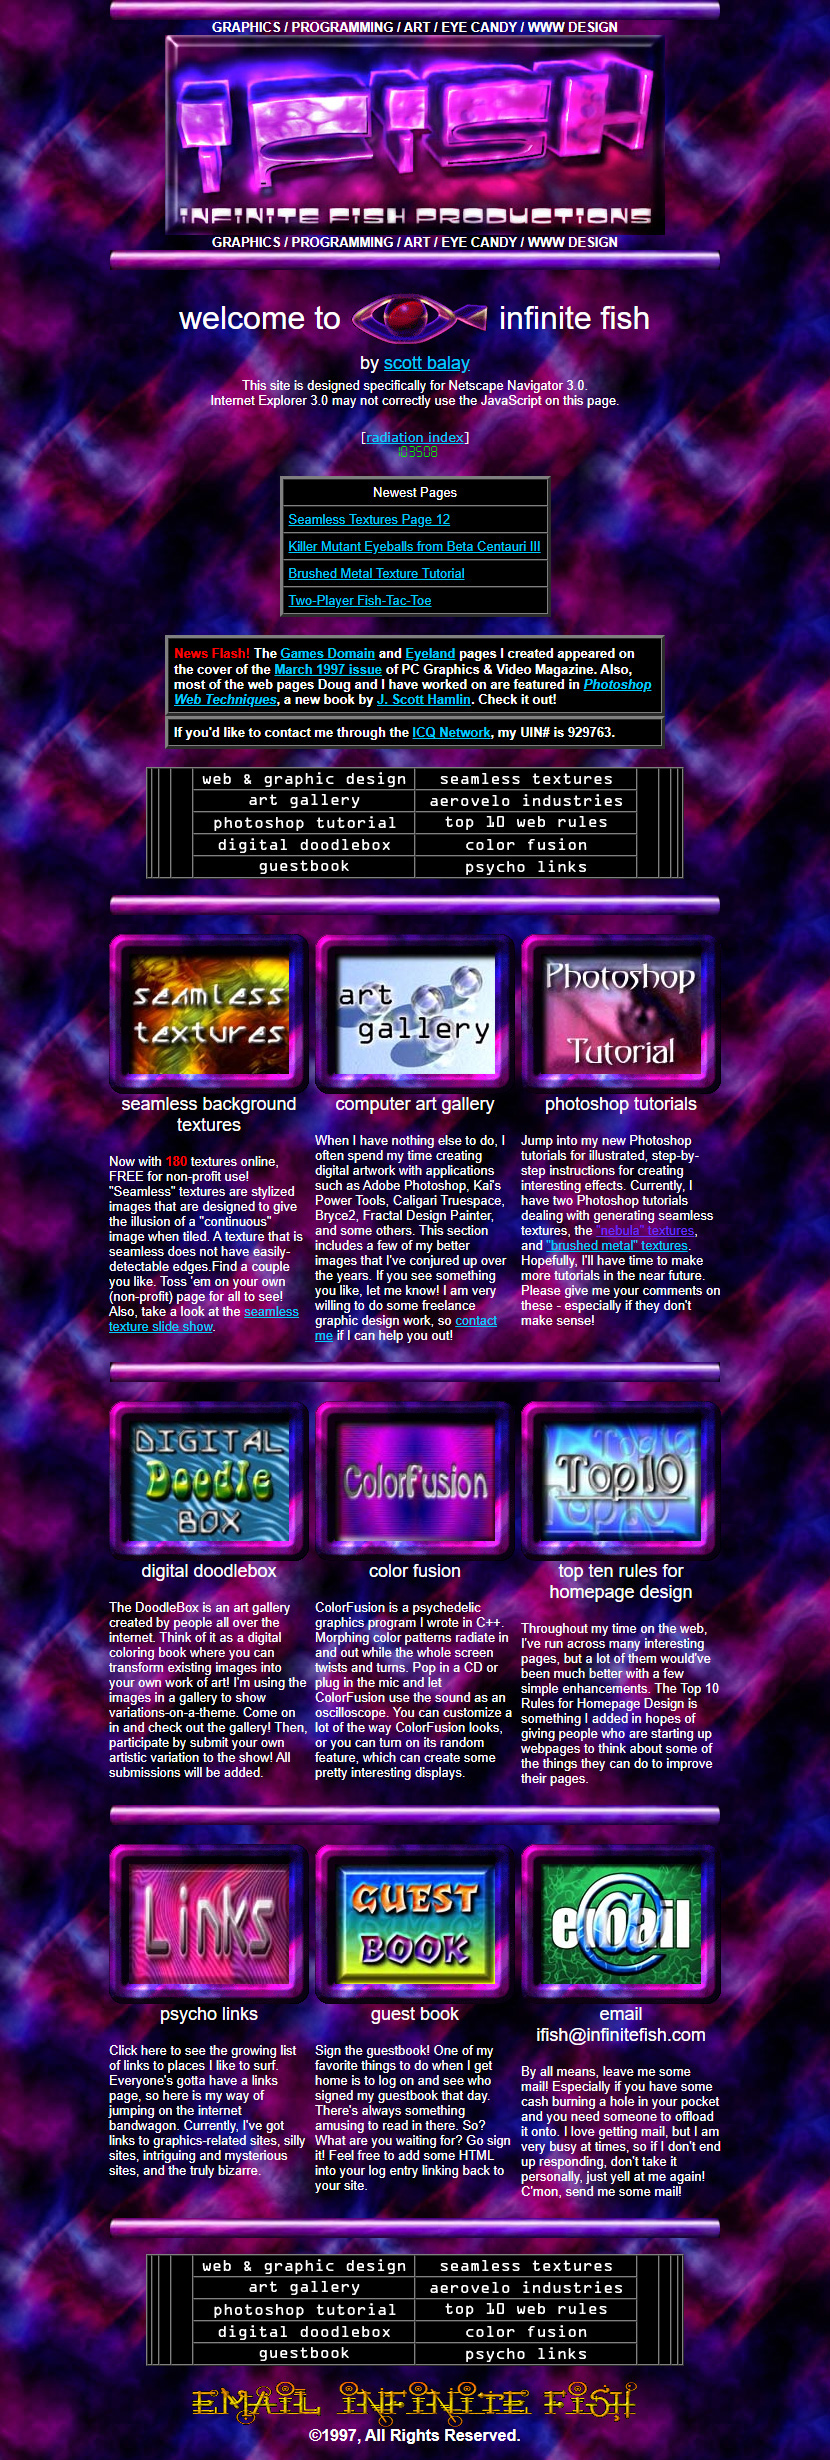 Infinite Fish website in 1997